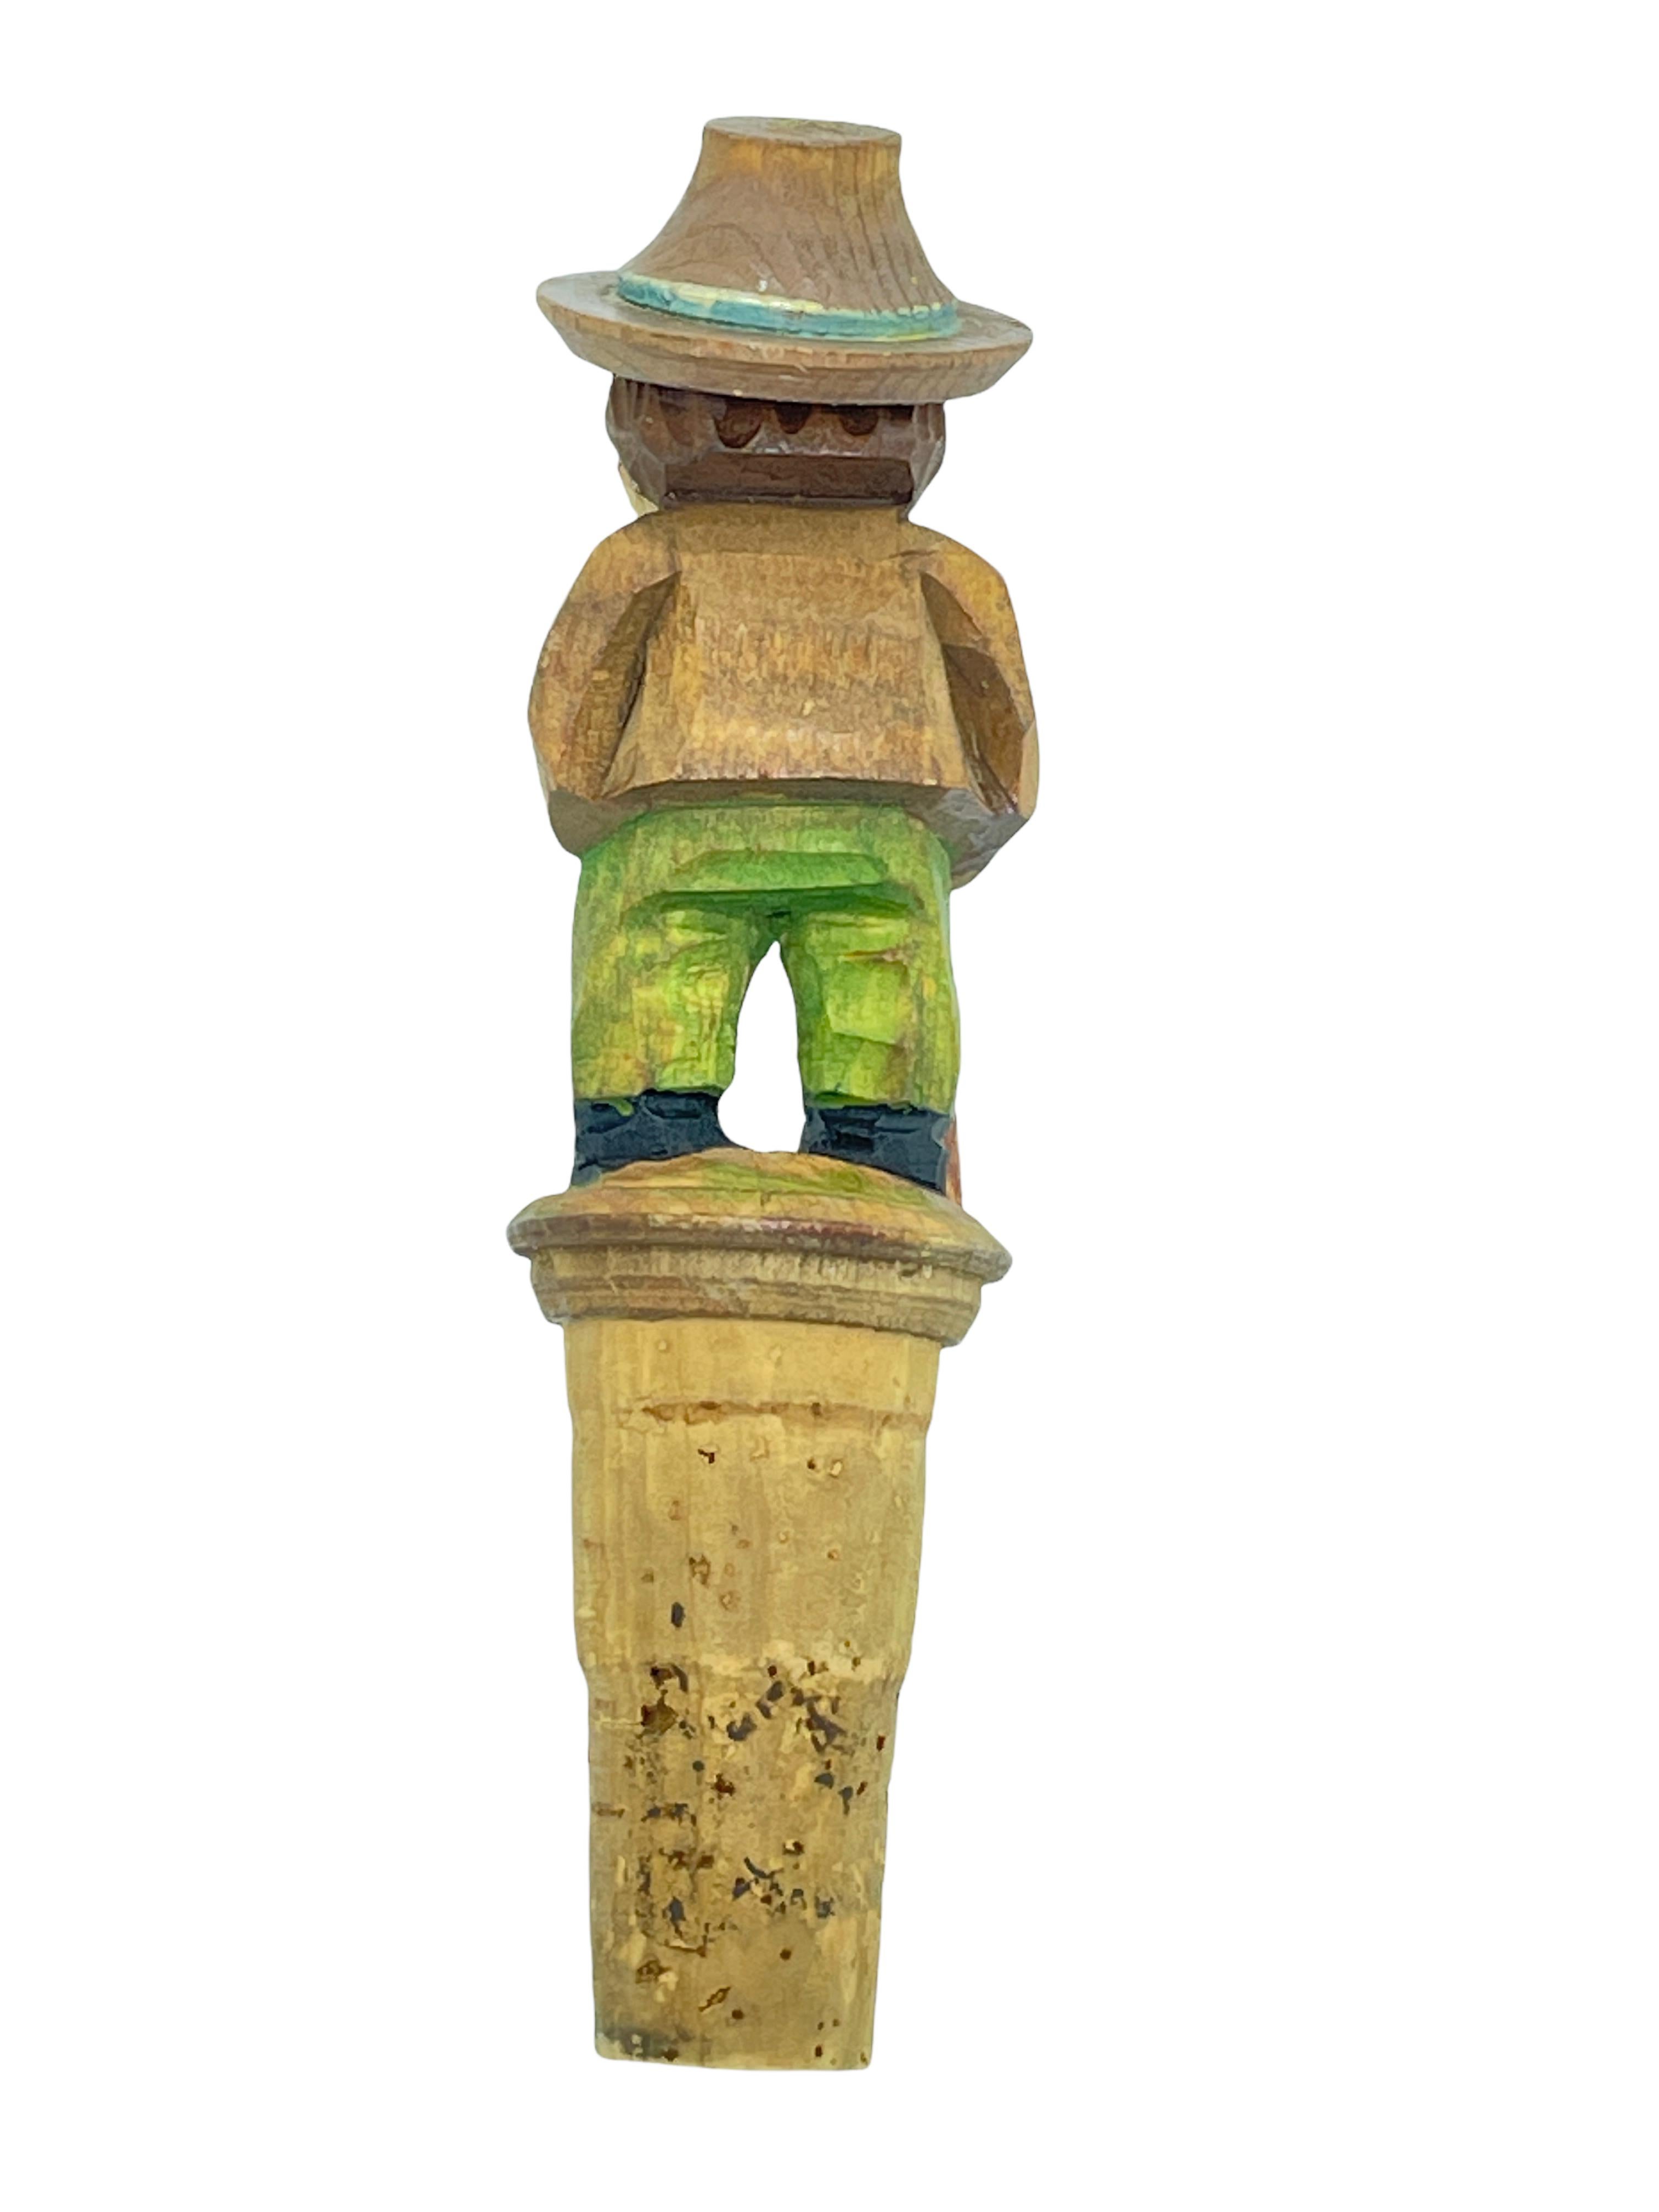 Black Forest Anri Wood Carved Figural Tramp Bottle Topper Stopper, 1950s